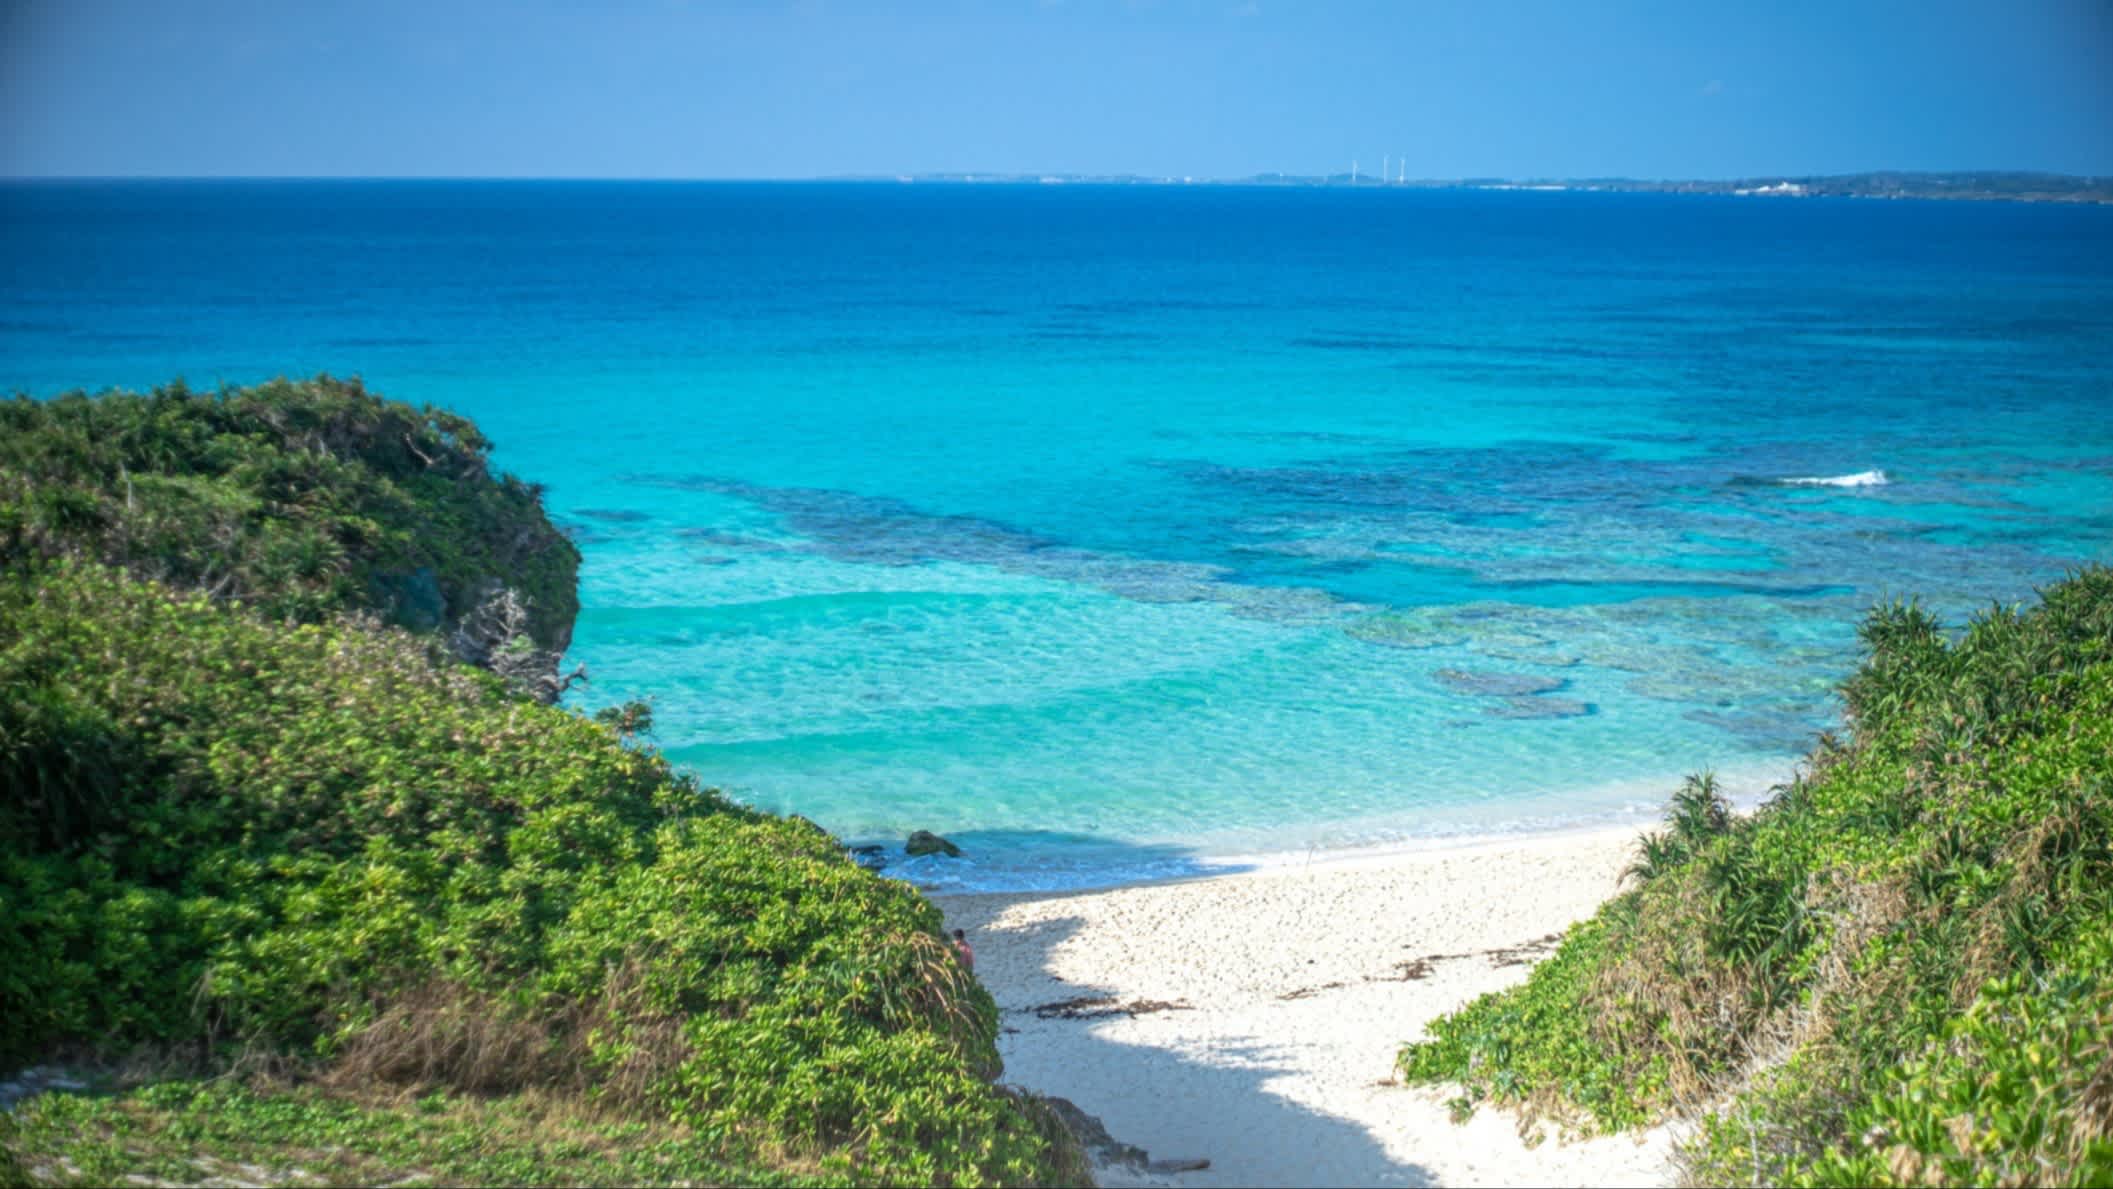 Weißer Sandstrand von Sunayama, Okinawa, Japan am blauen Meer, mit weißem Sand und grünen Hügeln.